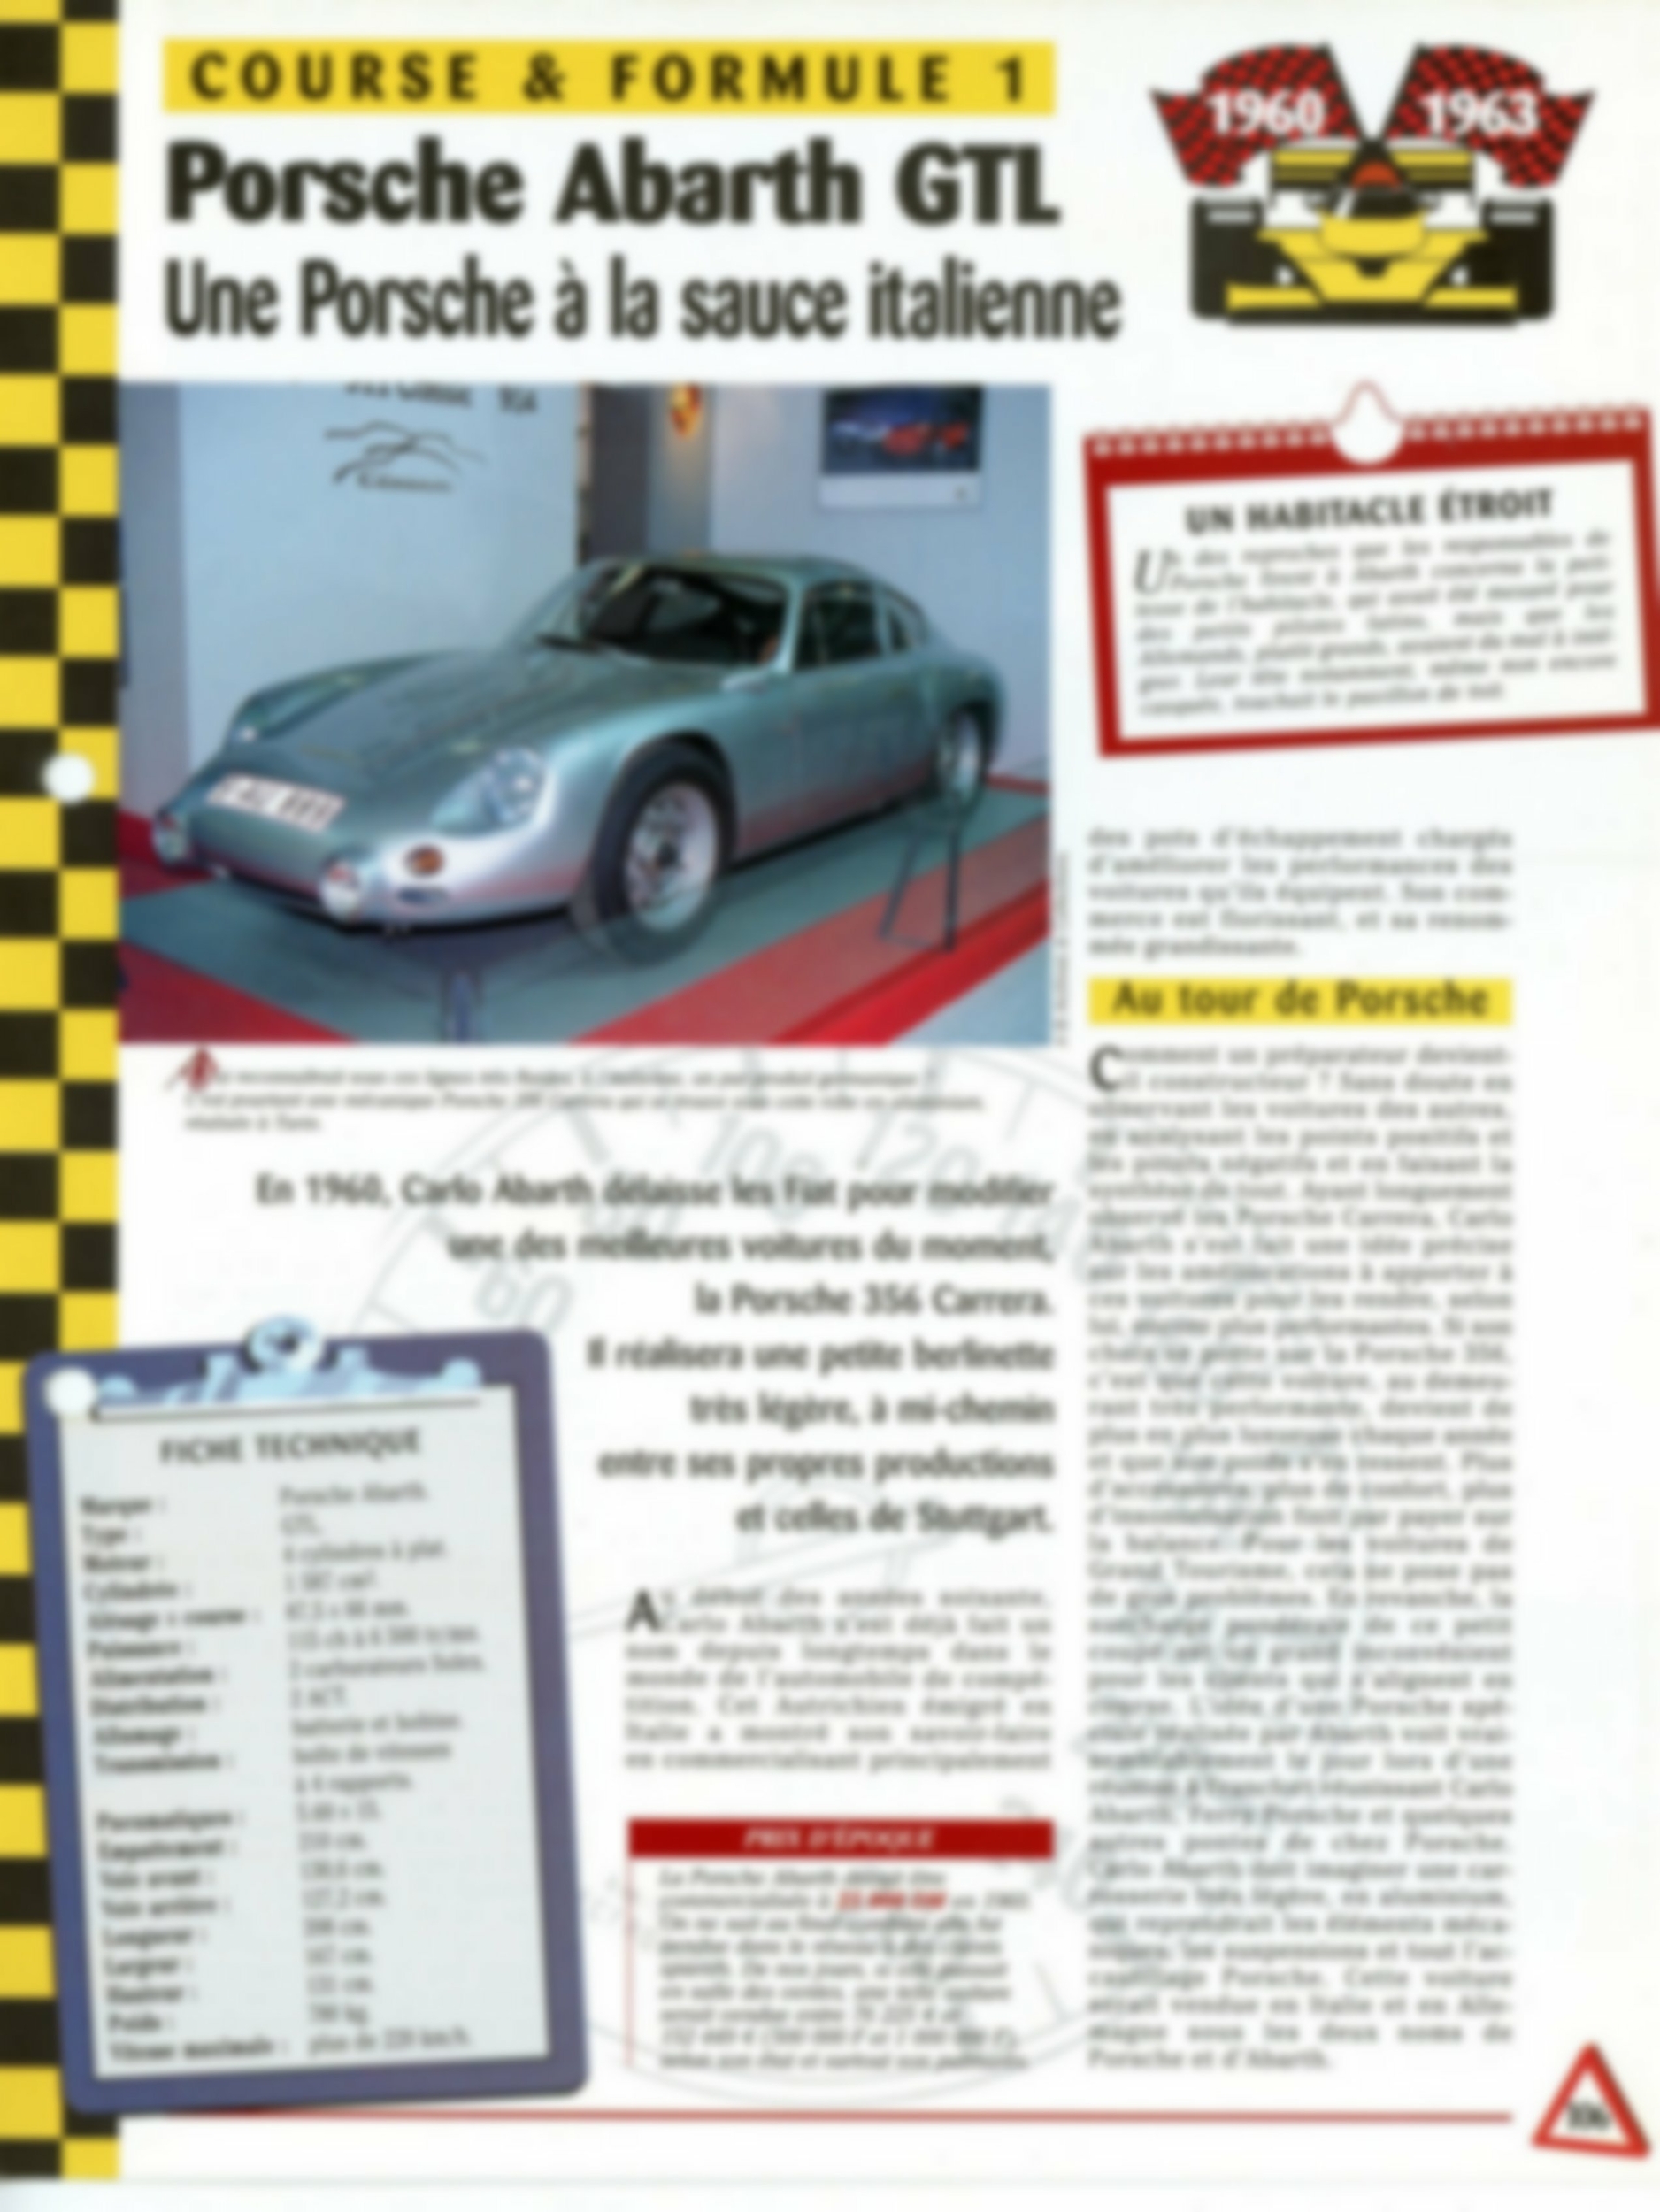 PORSCHE ABARTH GTL 1960-1963 - FICHE TECHNIQUE AUTO - COURSE